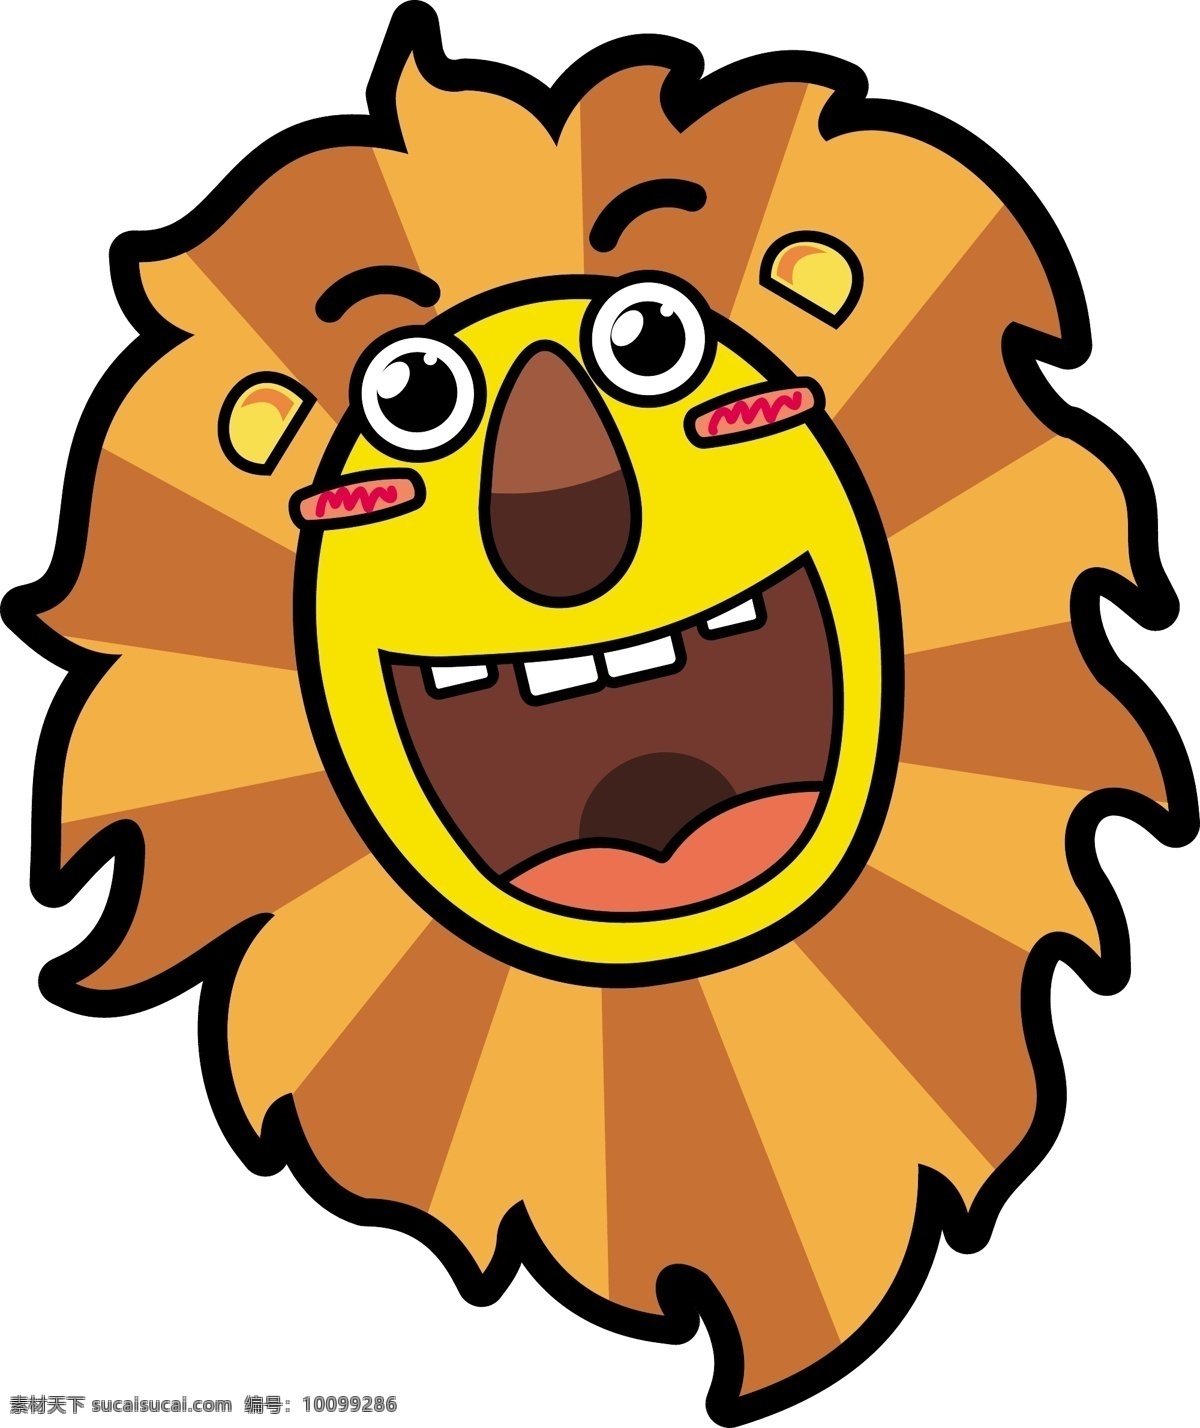 派西 麦尔 国际 儿童 成长 中心 吉祥物 狮子 早教 矢量图 其他矢量图